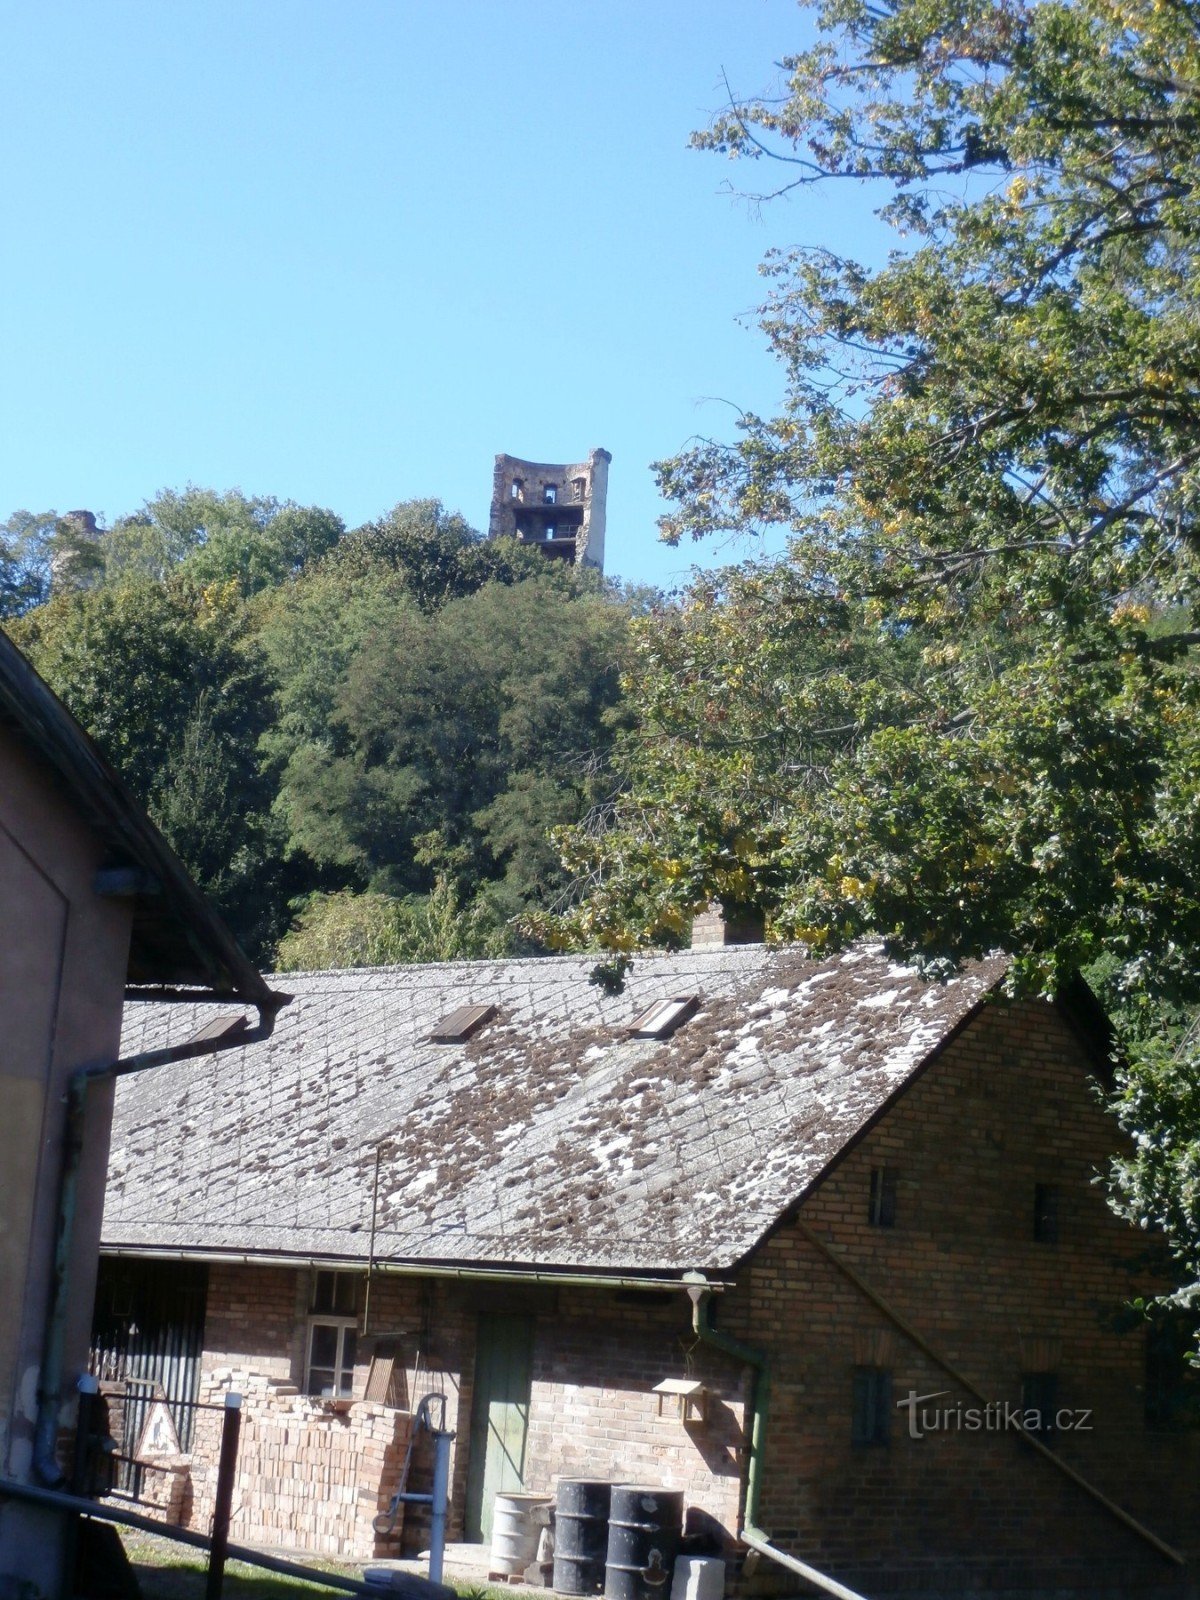 Trên đường đi, tháp của lâu đài Zvířetice nhìn ra chúng tôi